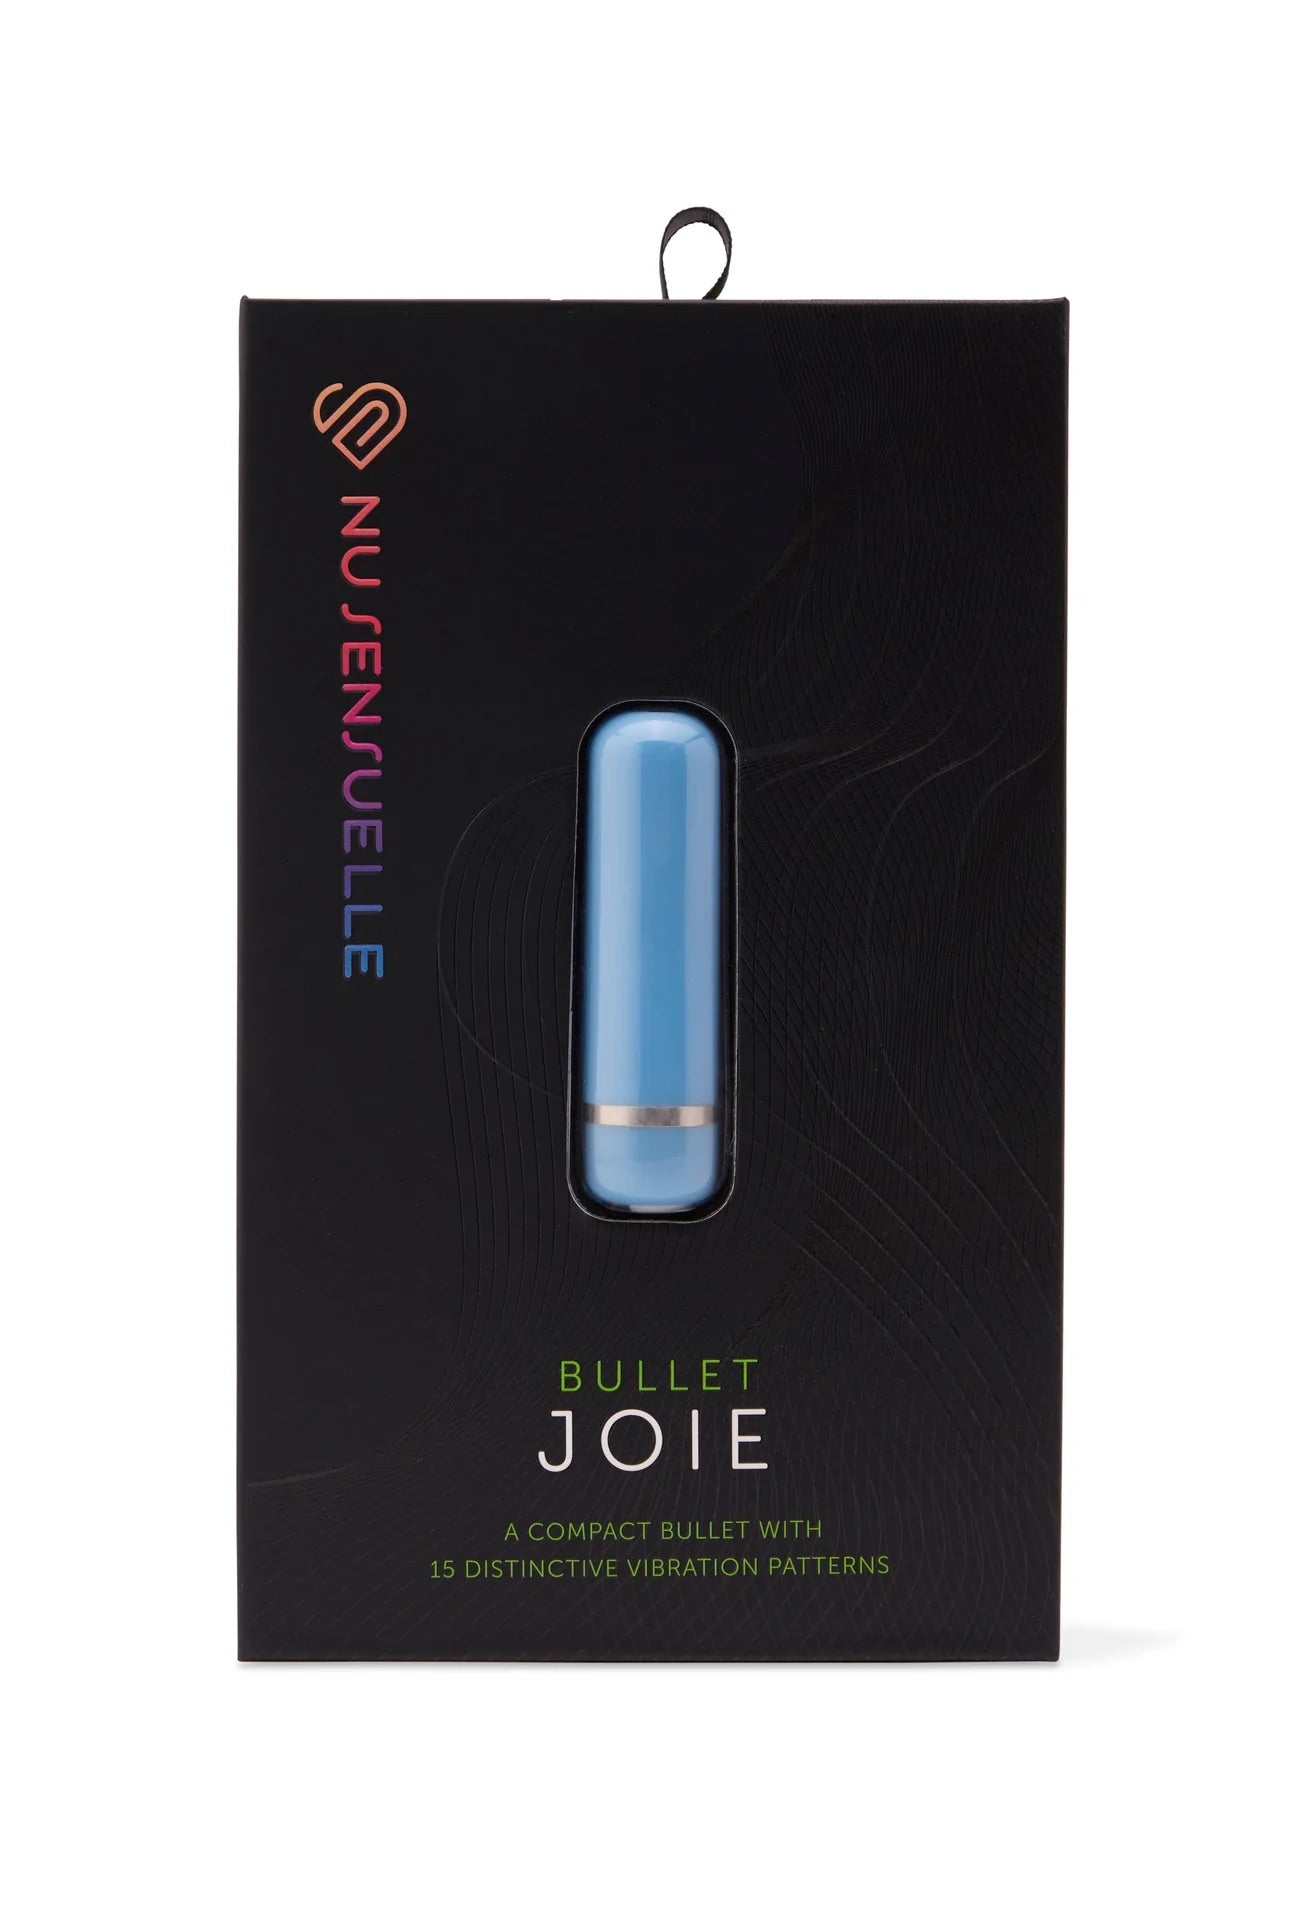 JOIE BULLET - 3 Colours - Feel the Power! - Boink Adult Boutique www.boinkmuskoka.com